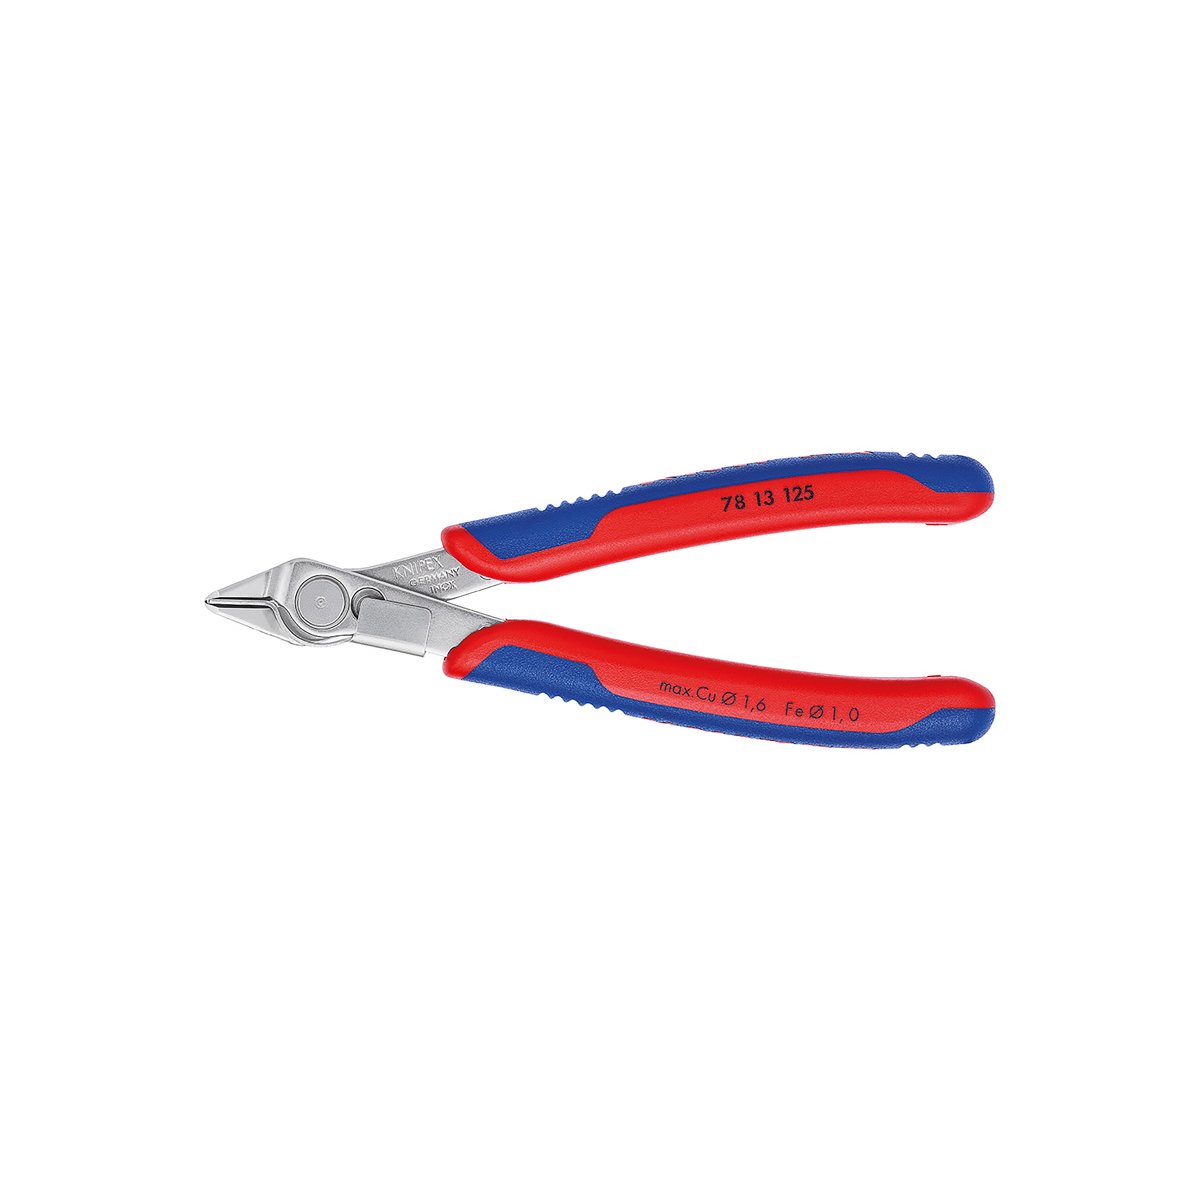 Electronic Super Knips® Бокорезы прецизионные, нерж., зажим для проволоки, 125 мм, 2-комп ручки, SB